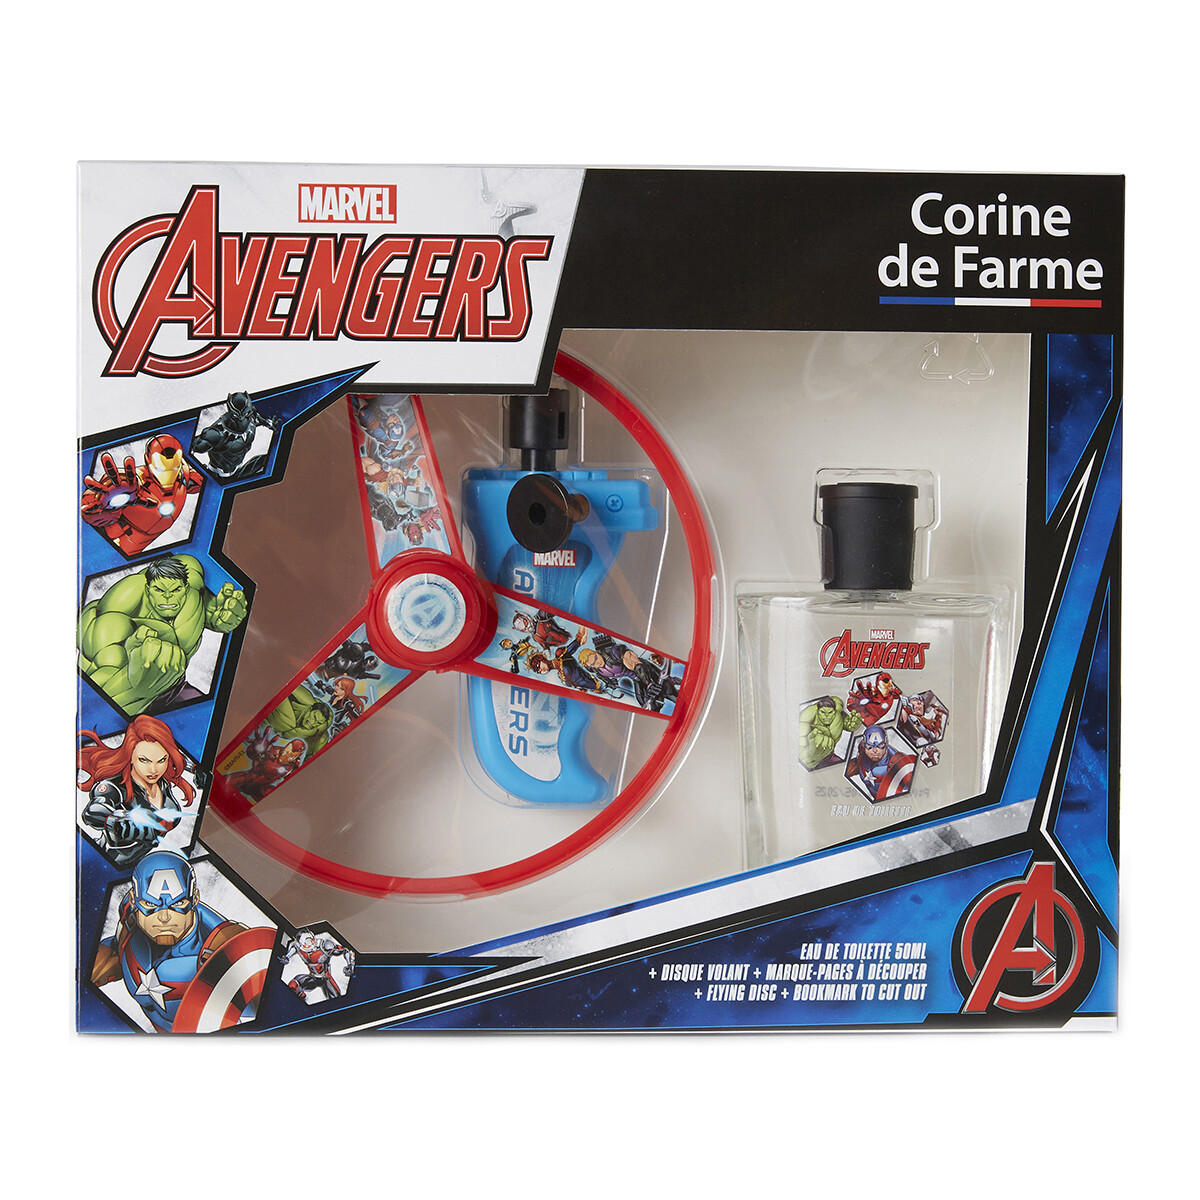 Corine De Farme Autres Coffret cadeau Avengers Marvel mldisVRj